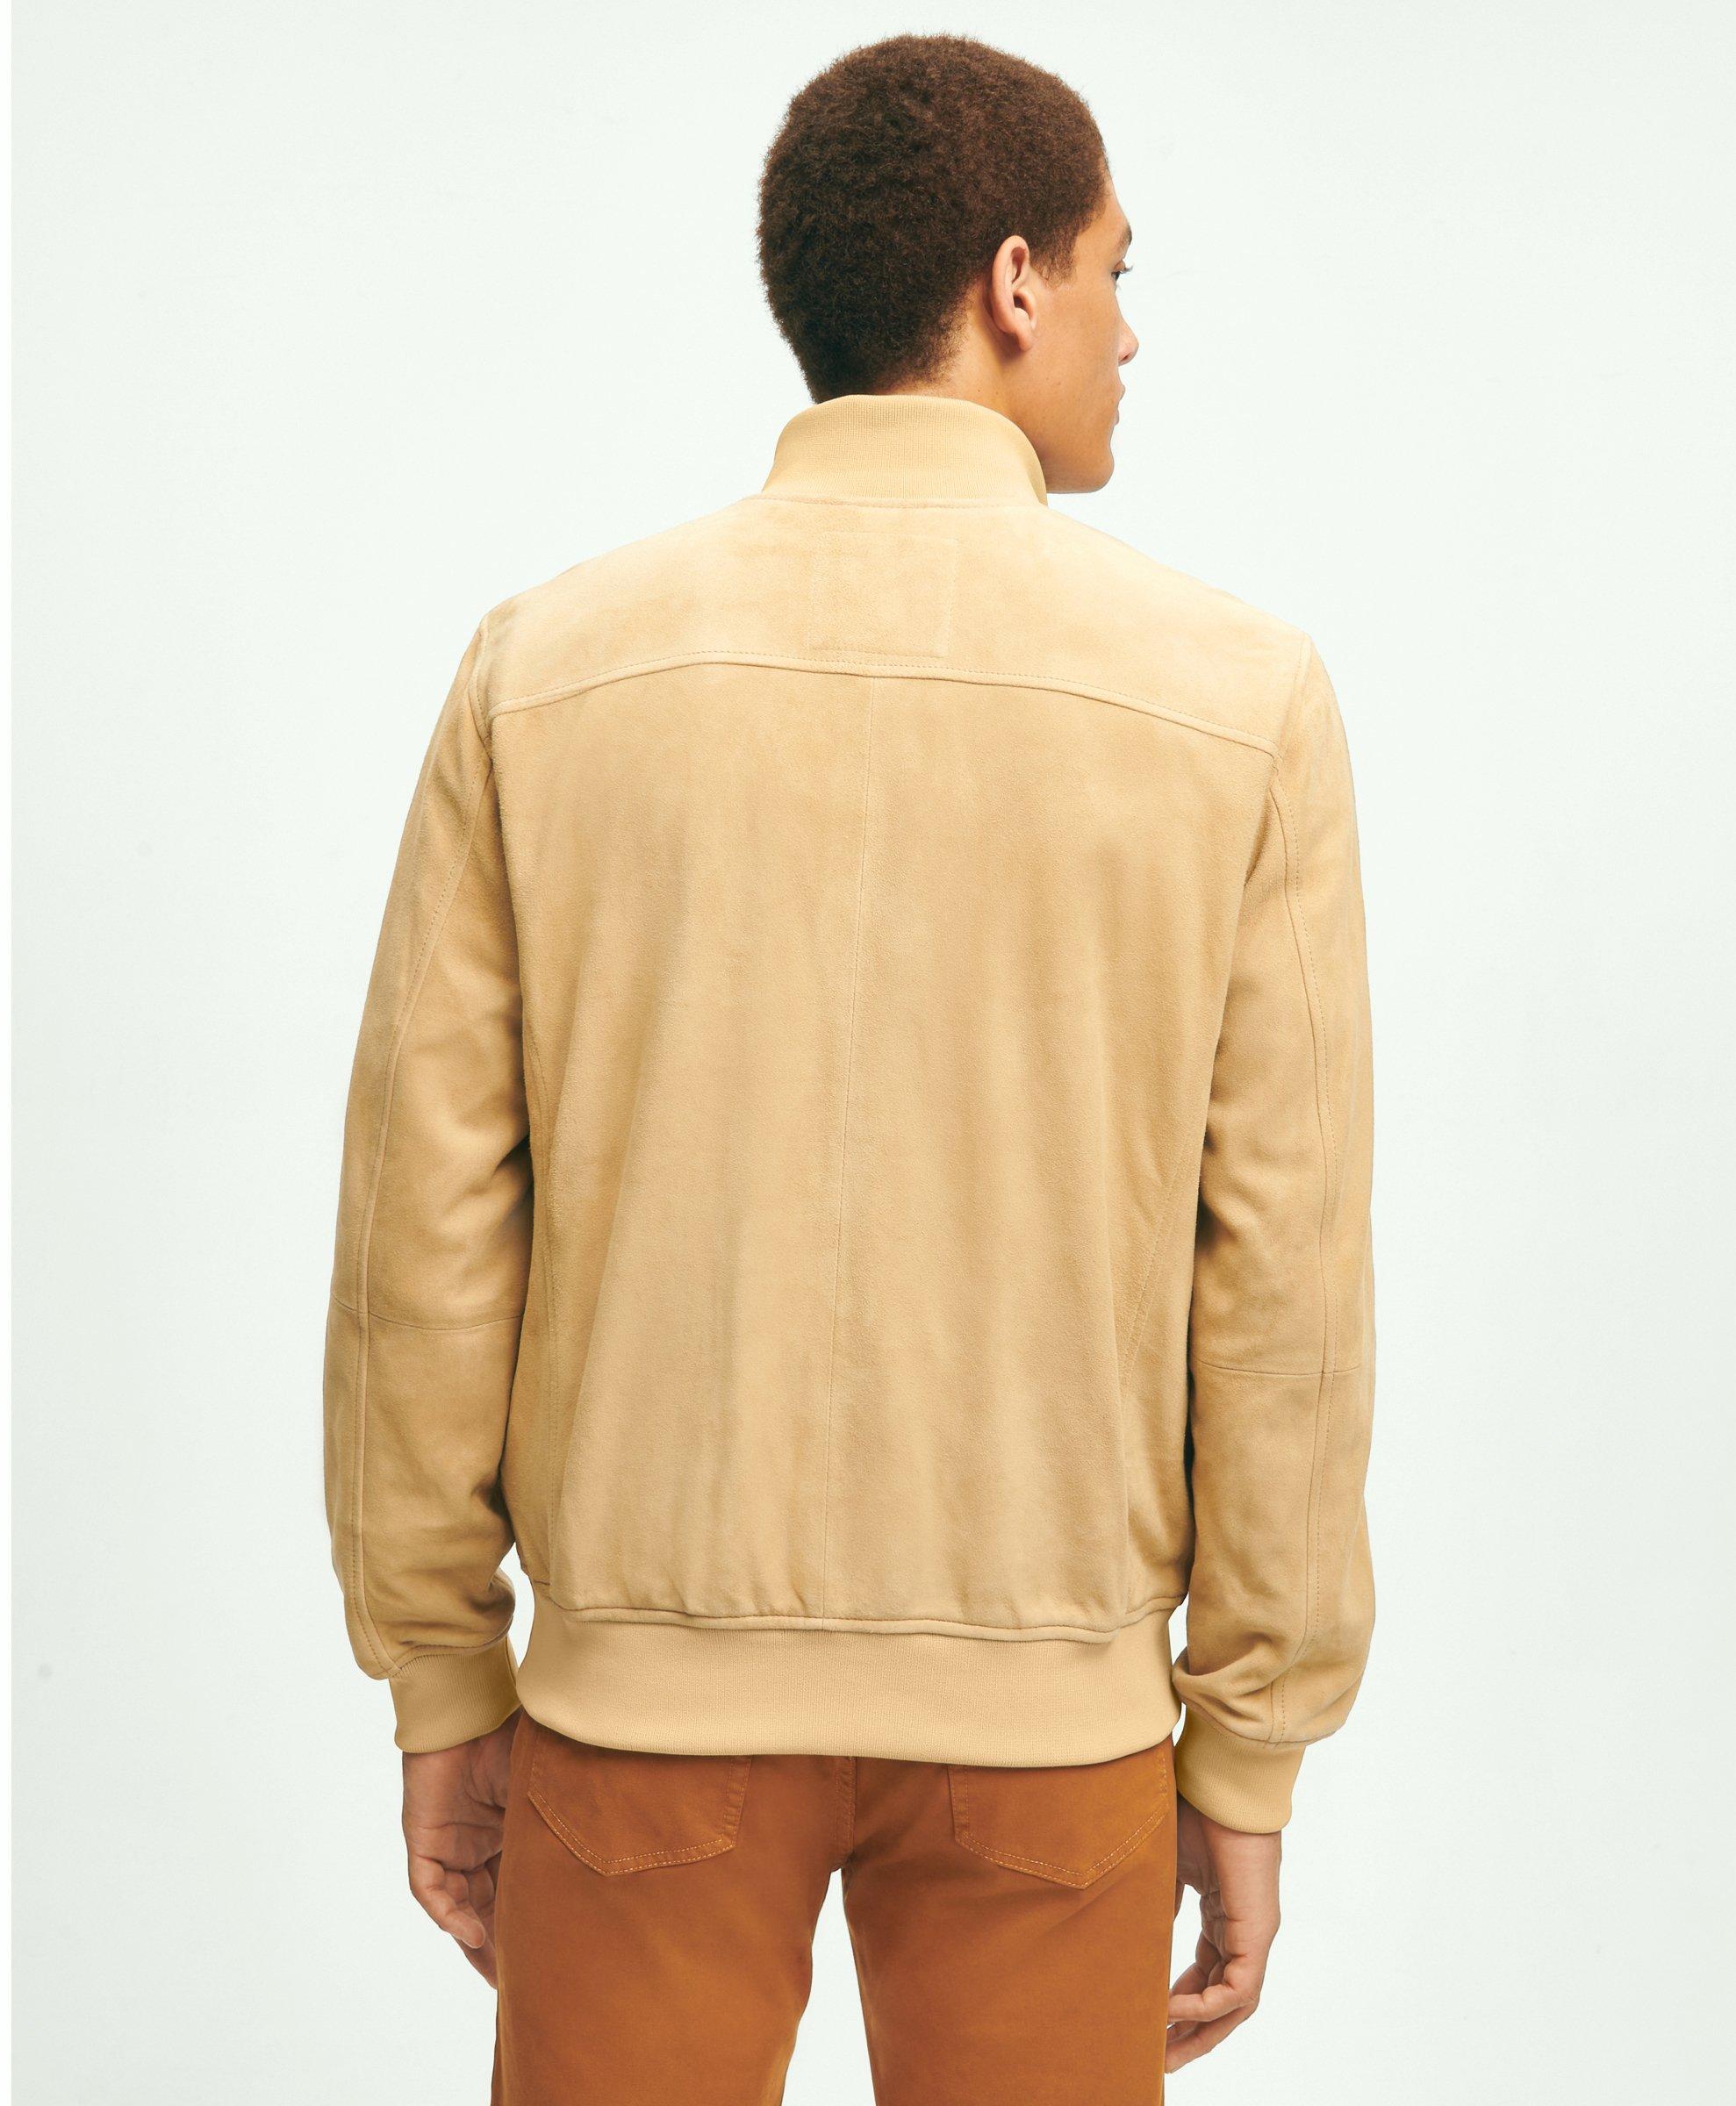 ESPRIT - Lightweight bomber jacket at our online shop